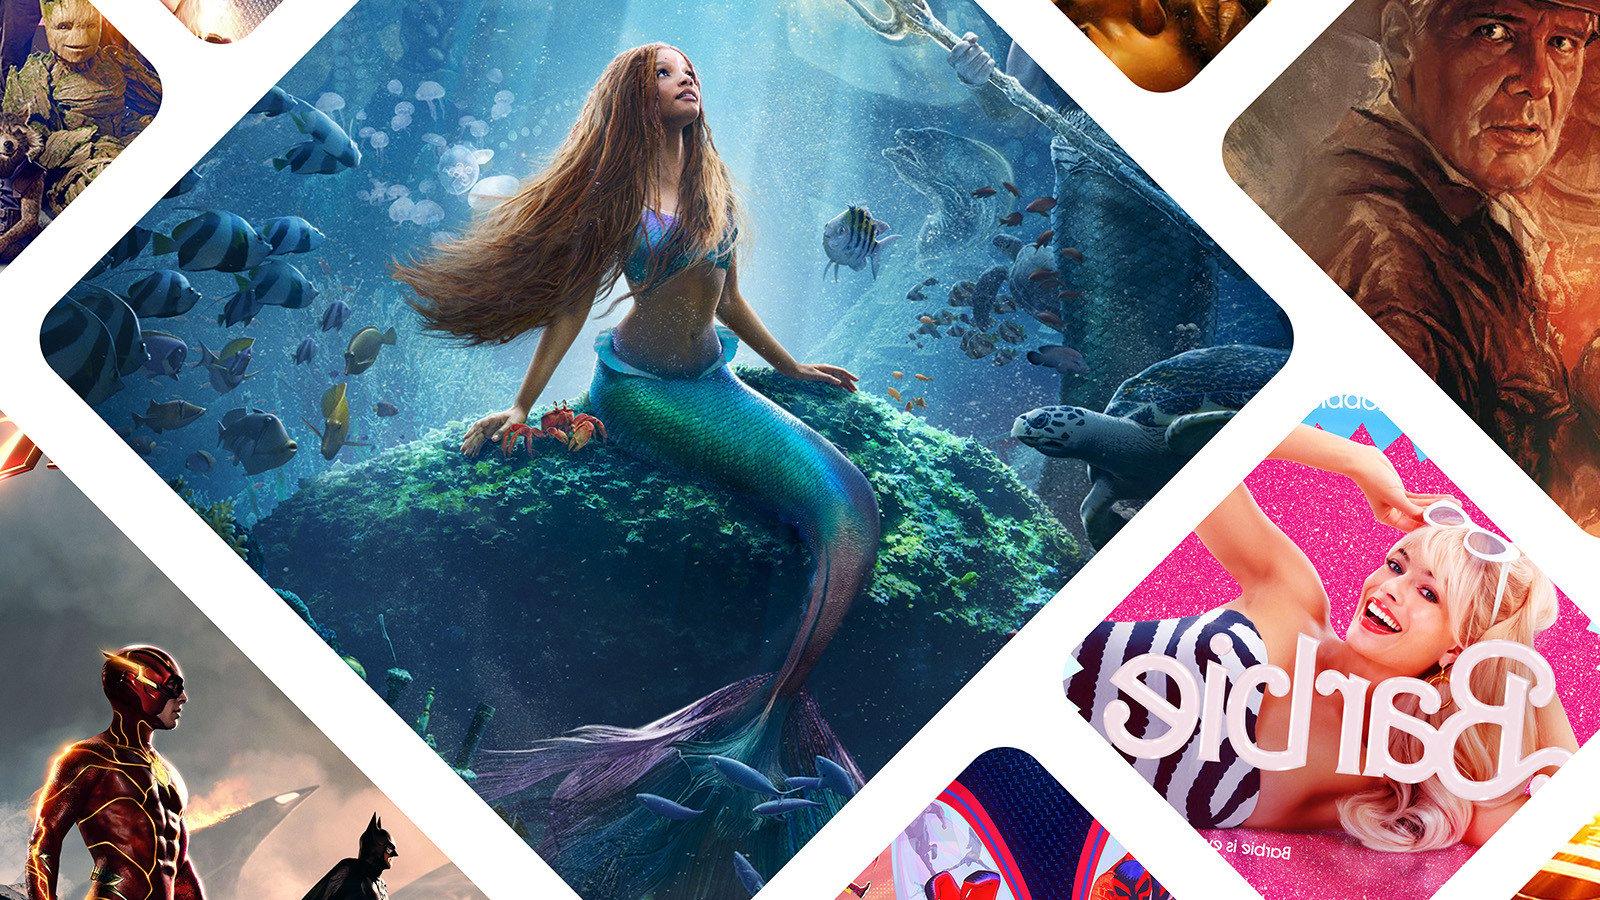 2023年夏季电影的马赛克图像, 包括《小美人鱼》,“芭比,以及《夺宝奇兵:命运之盘》.'